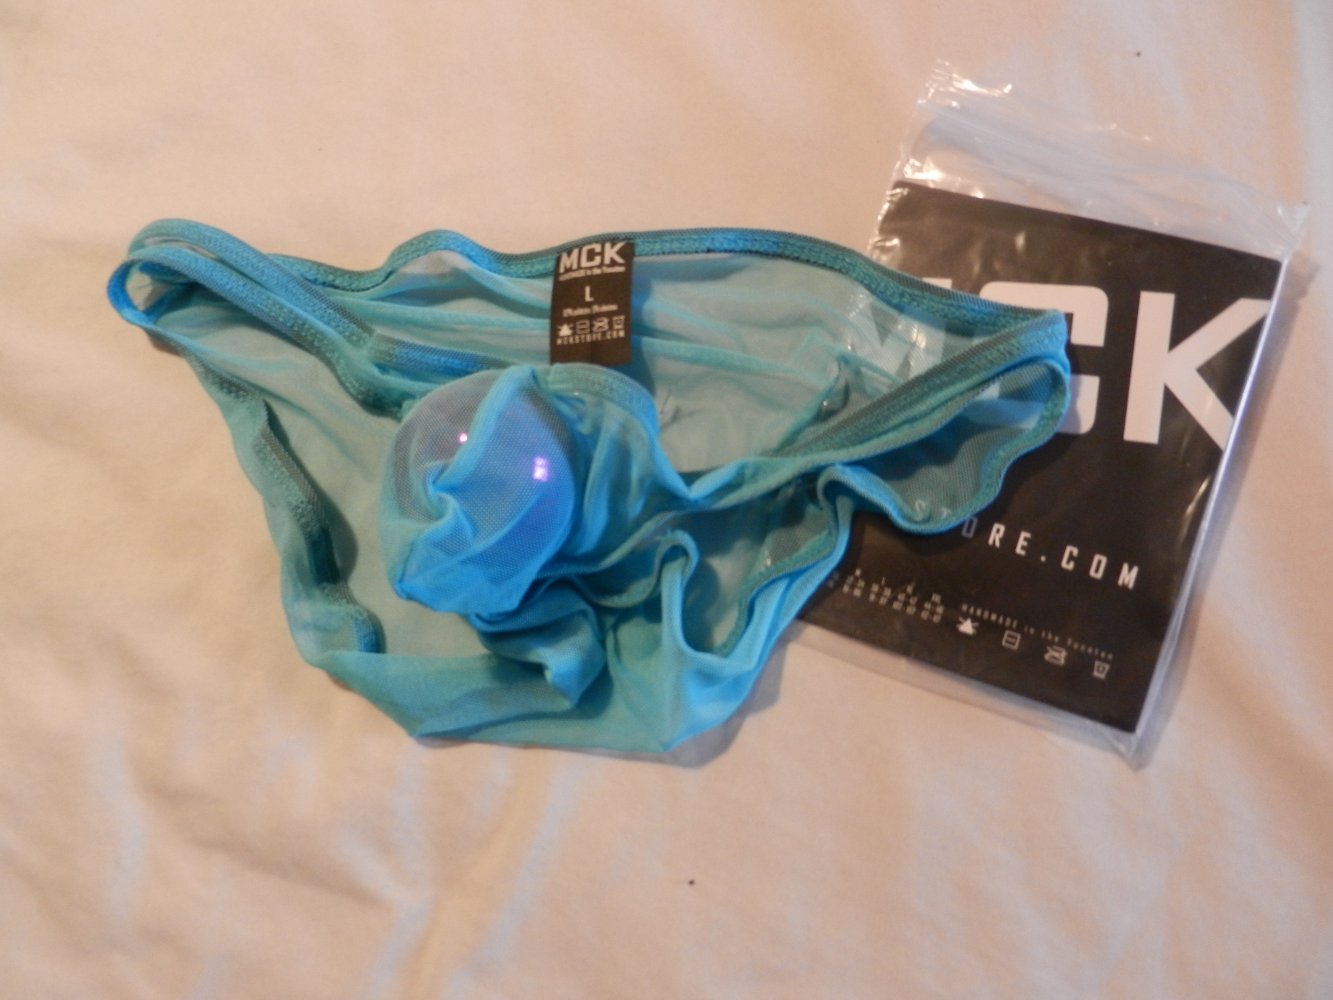 Mc Killop feiner Netzslip, Baby Blue, L Waist 91-97 cm transparent, mit Bulge, sportlich tiefhueftig und sexy 